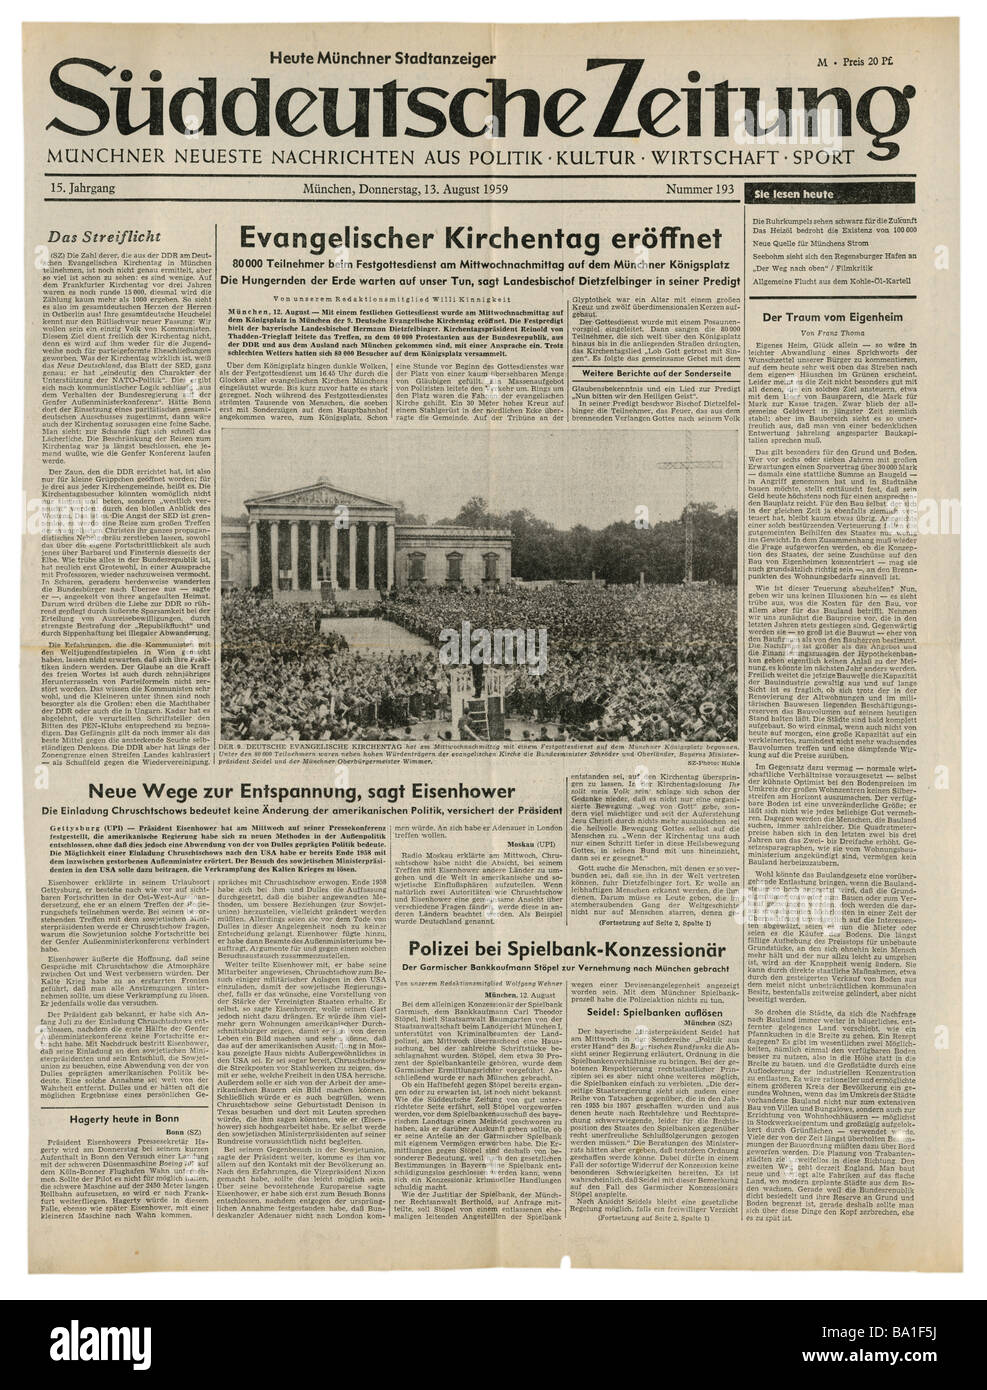 Presse/Medien, Zeitschriften, "Süddeutsche Zeitung", München, 15 Band, Nummer 193, Donnerstag 13.8.1959, Titel, Eröffnung des evangelischen Kirchenkongresses, Stockfoto